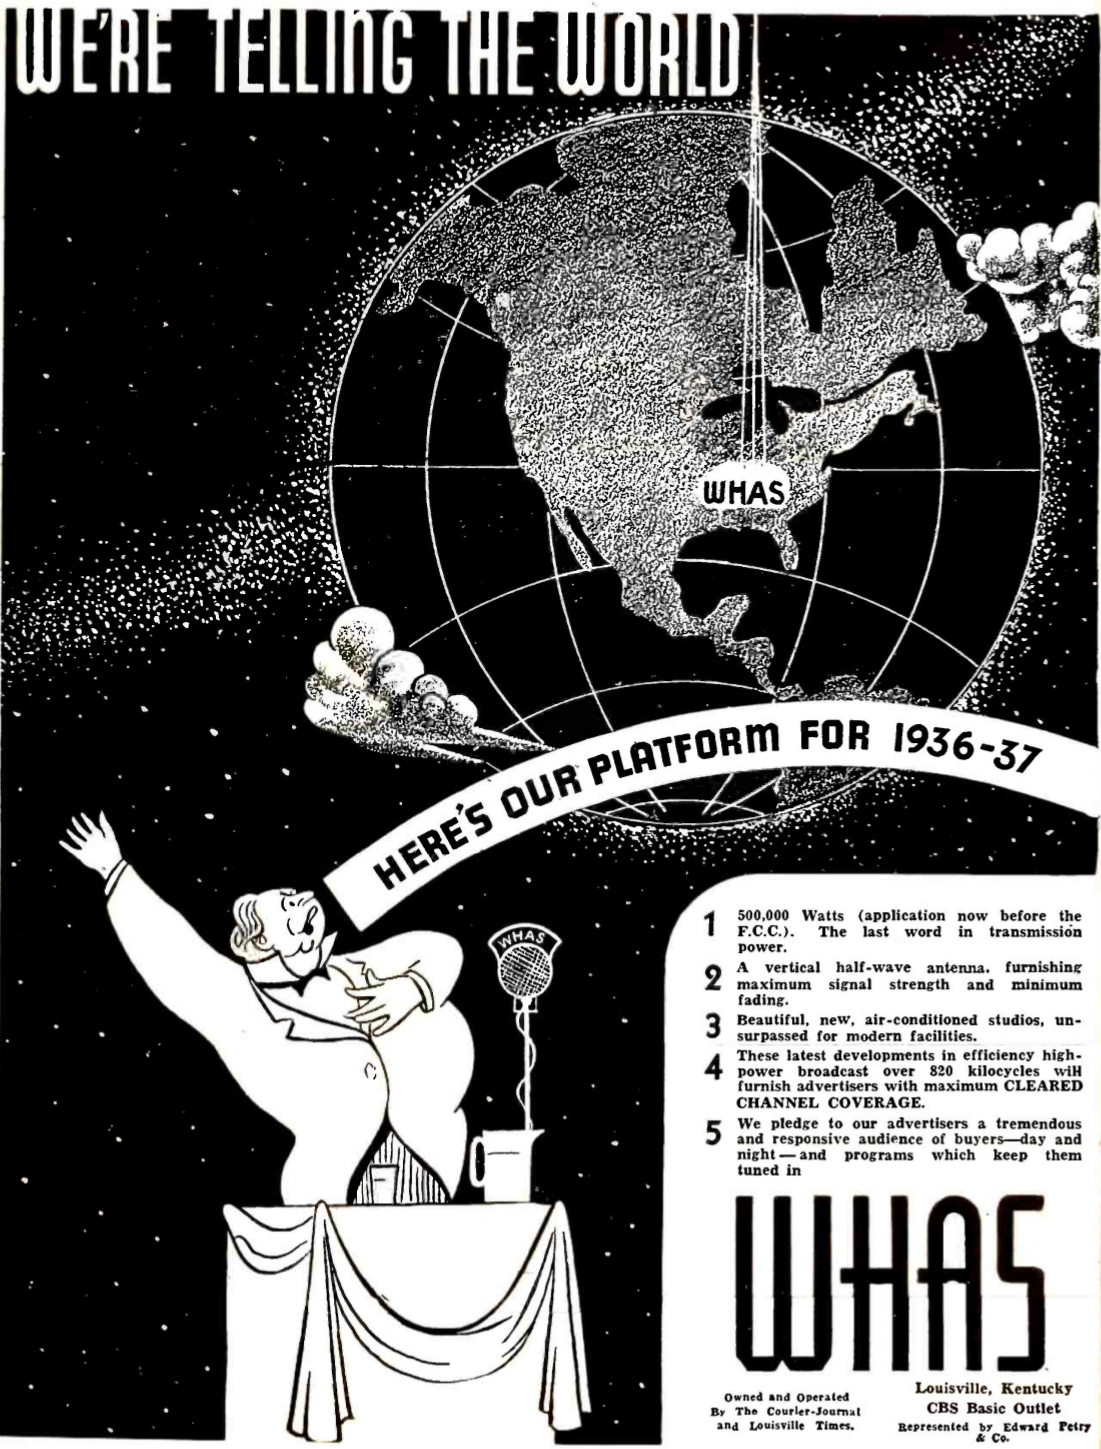 WHAS - Louisville, Kentucky U.S.A. - 1936